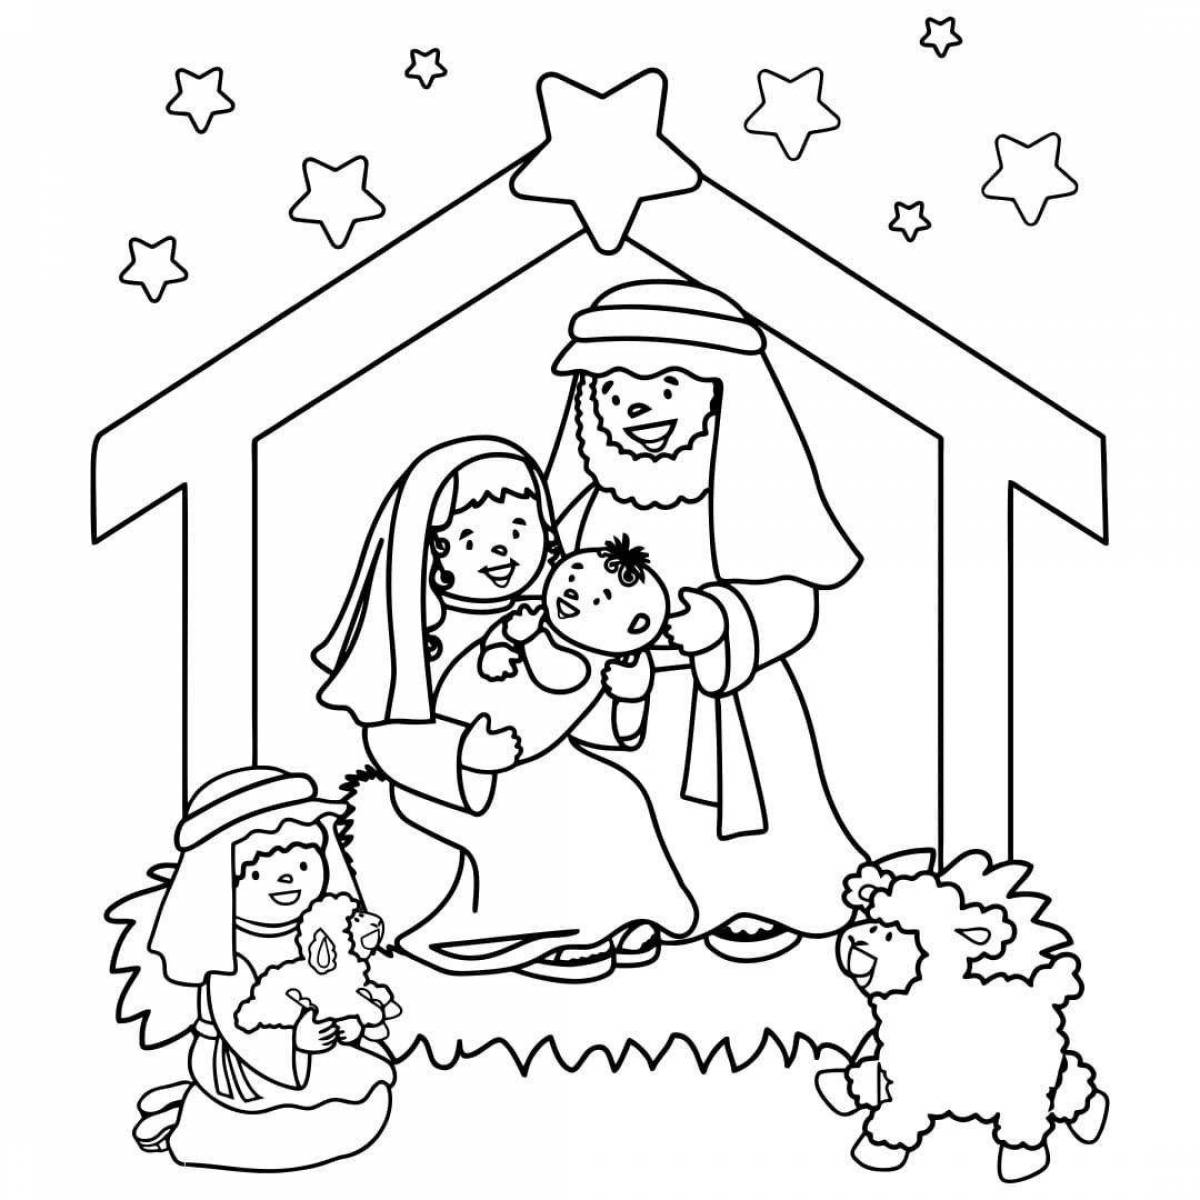 Adorable Christmas drawing for kids